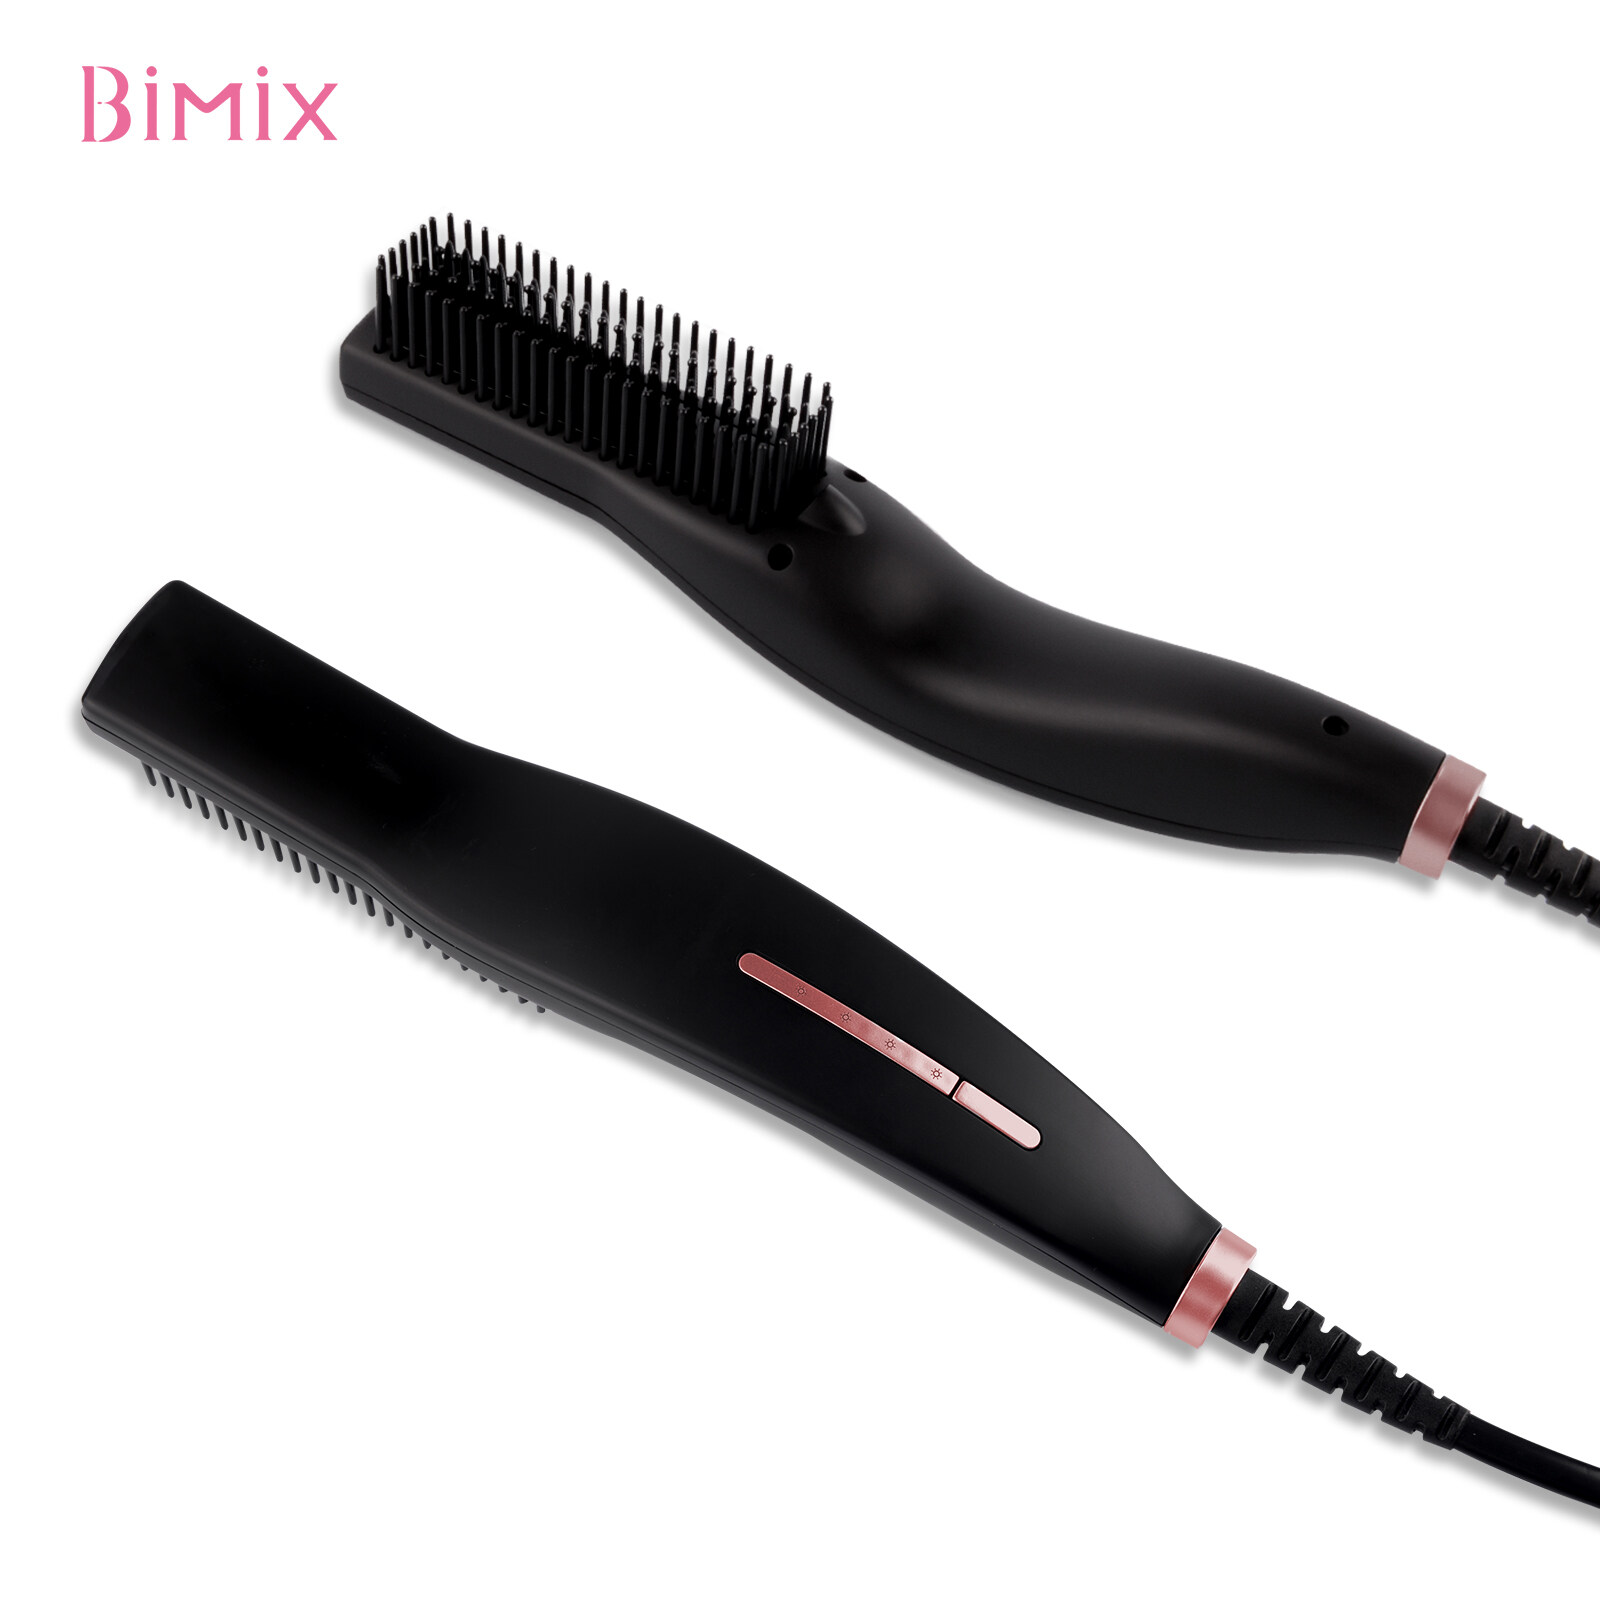 ELECTRIC 2 en 1 cepillo de cabello rizador de rizador, cepillo eléctrico 2 en 1 cabello, cepillo para el cabello al por mayor, cepillo para el cabello de porcelana